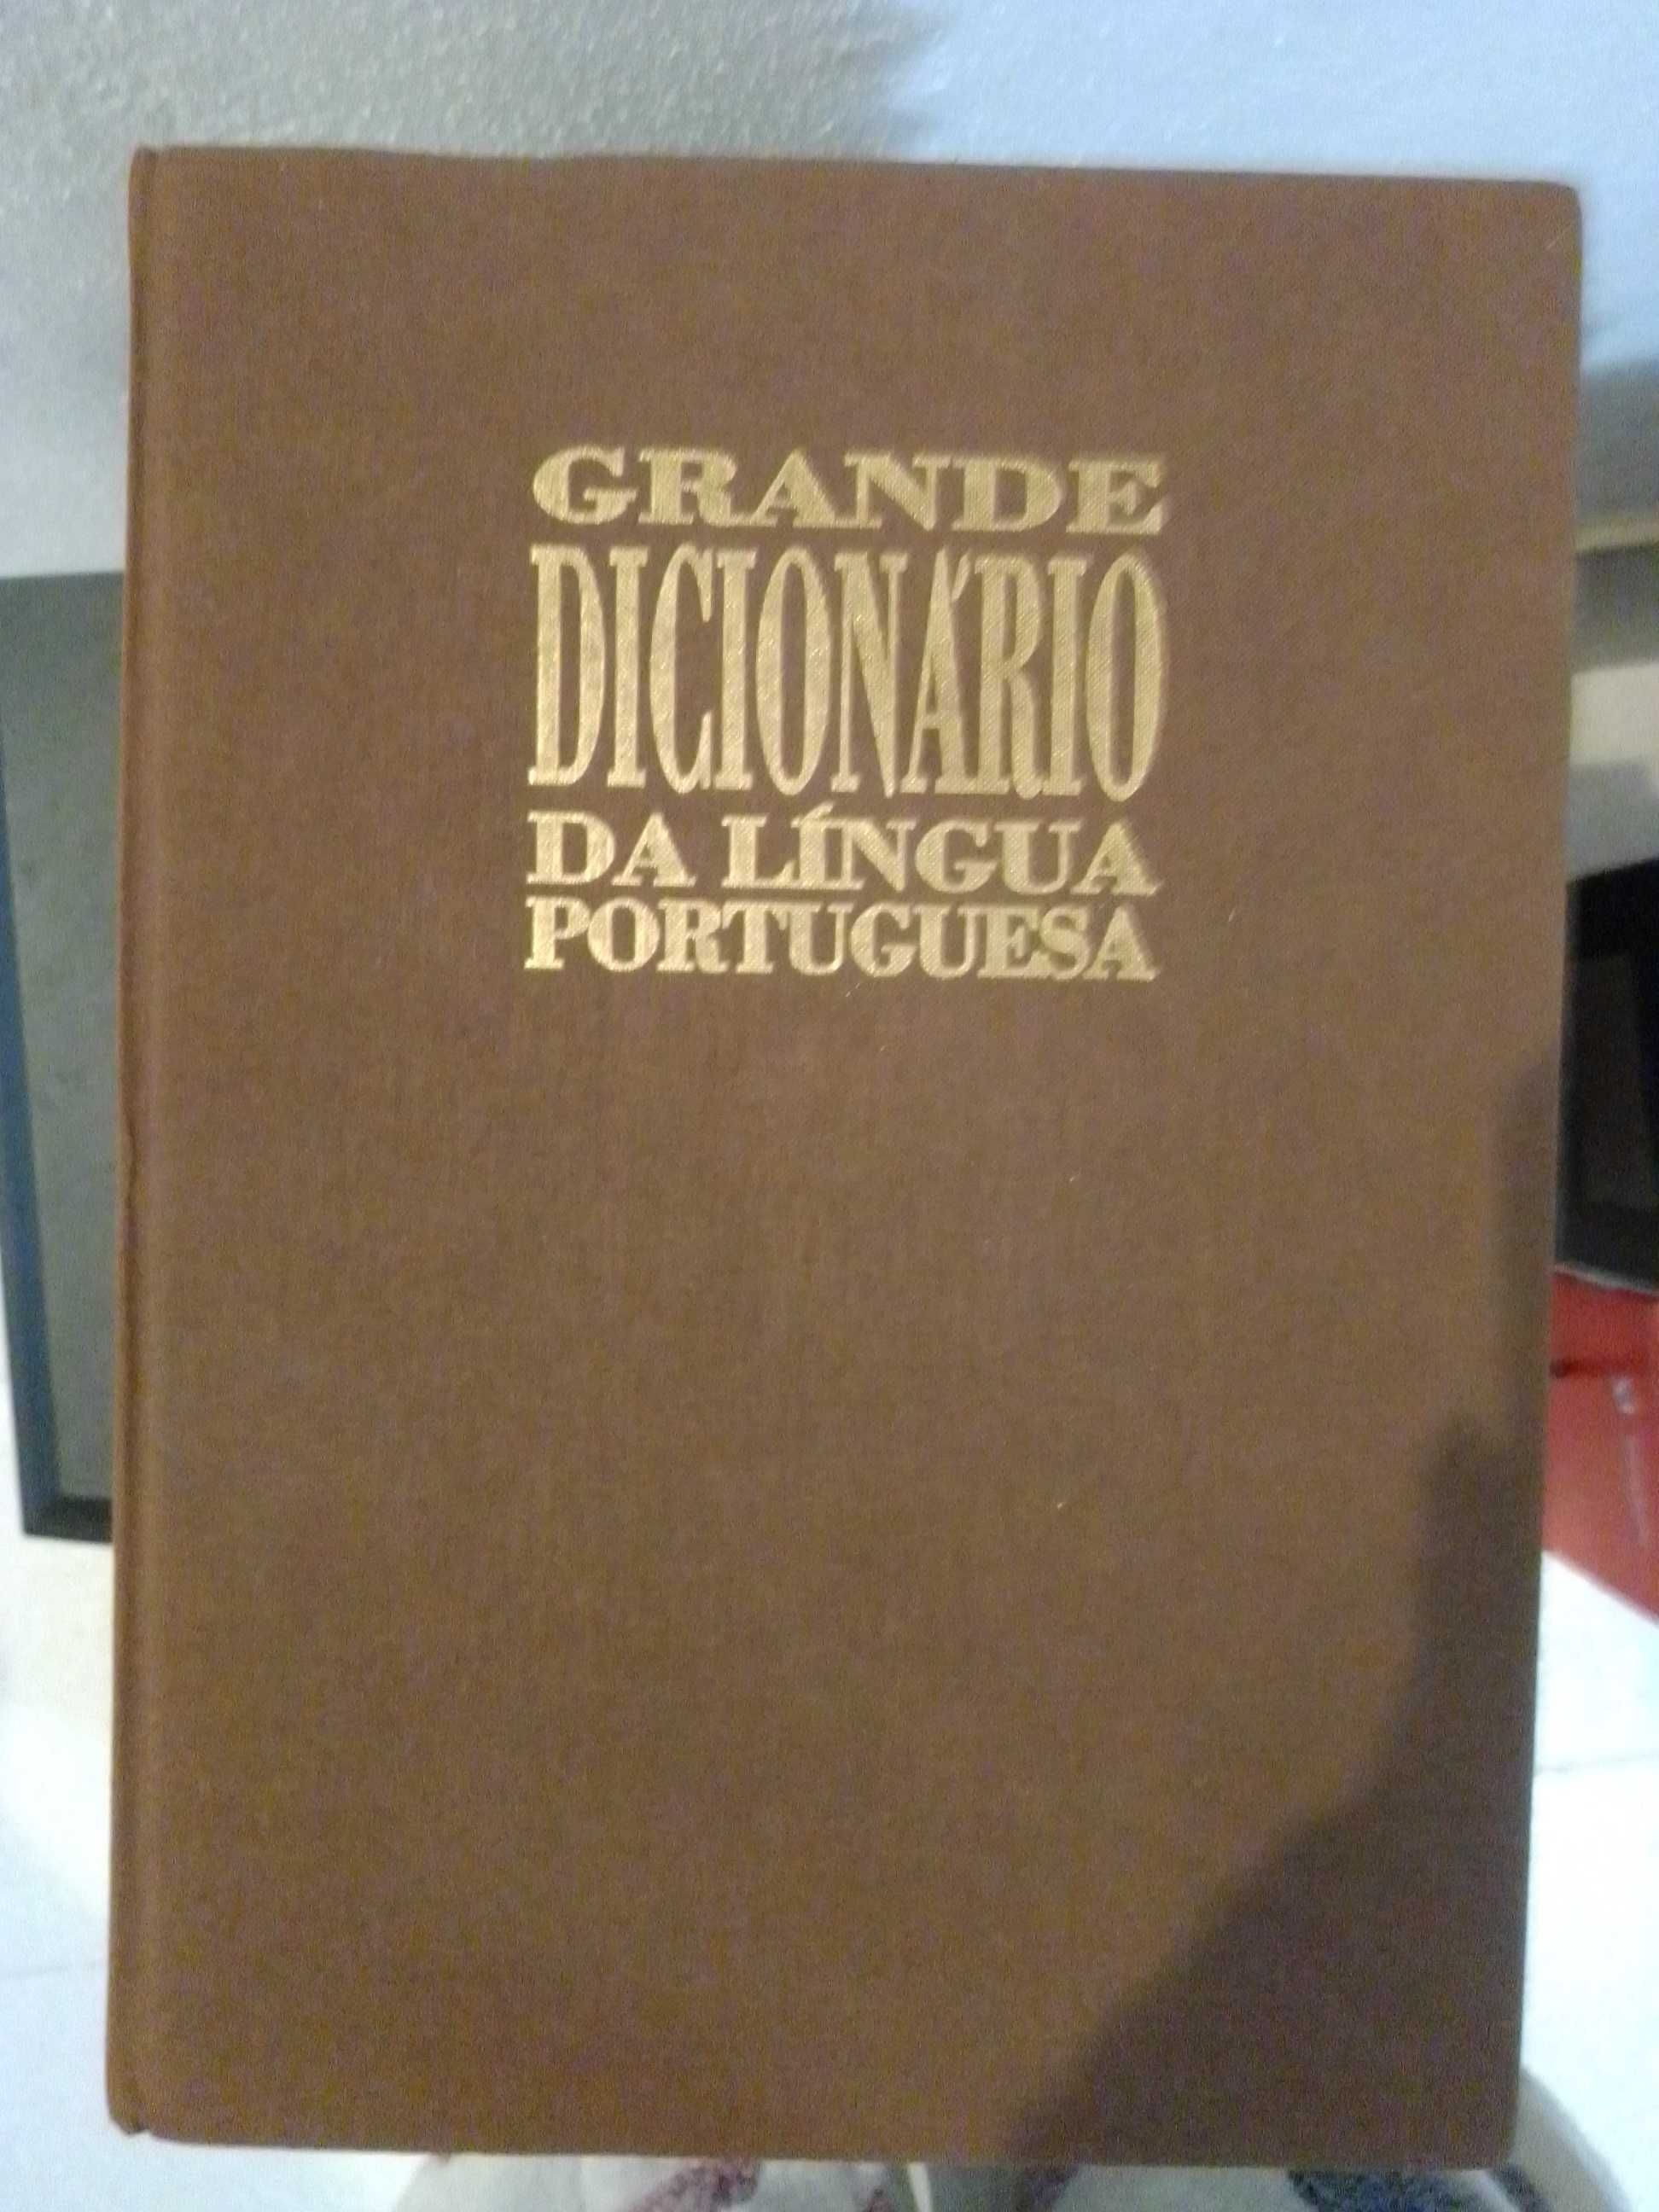 Coleção de dicionários de língua portuguesa Círculo de Leitores